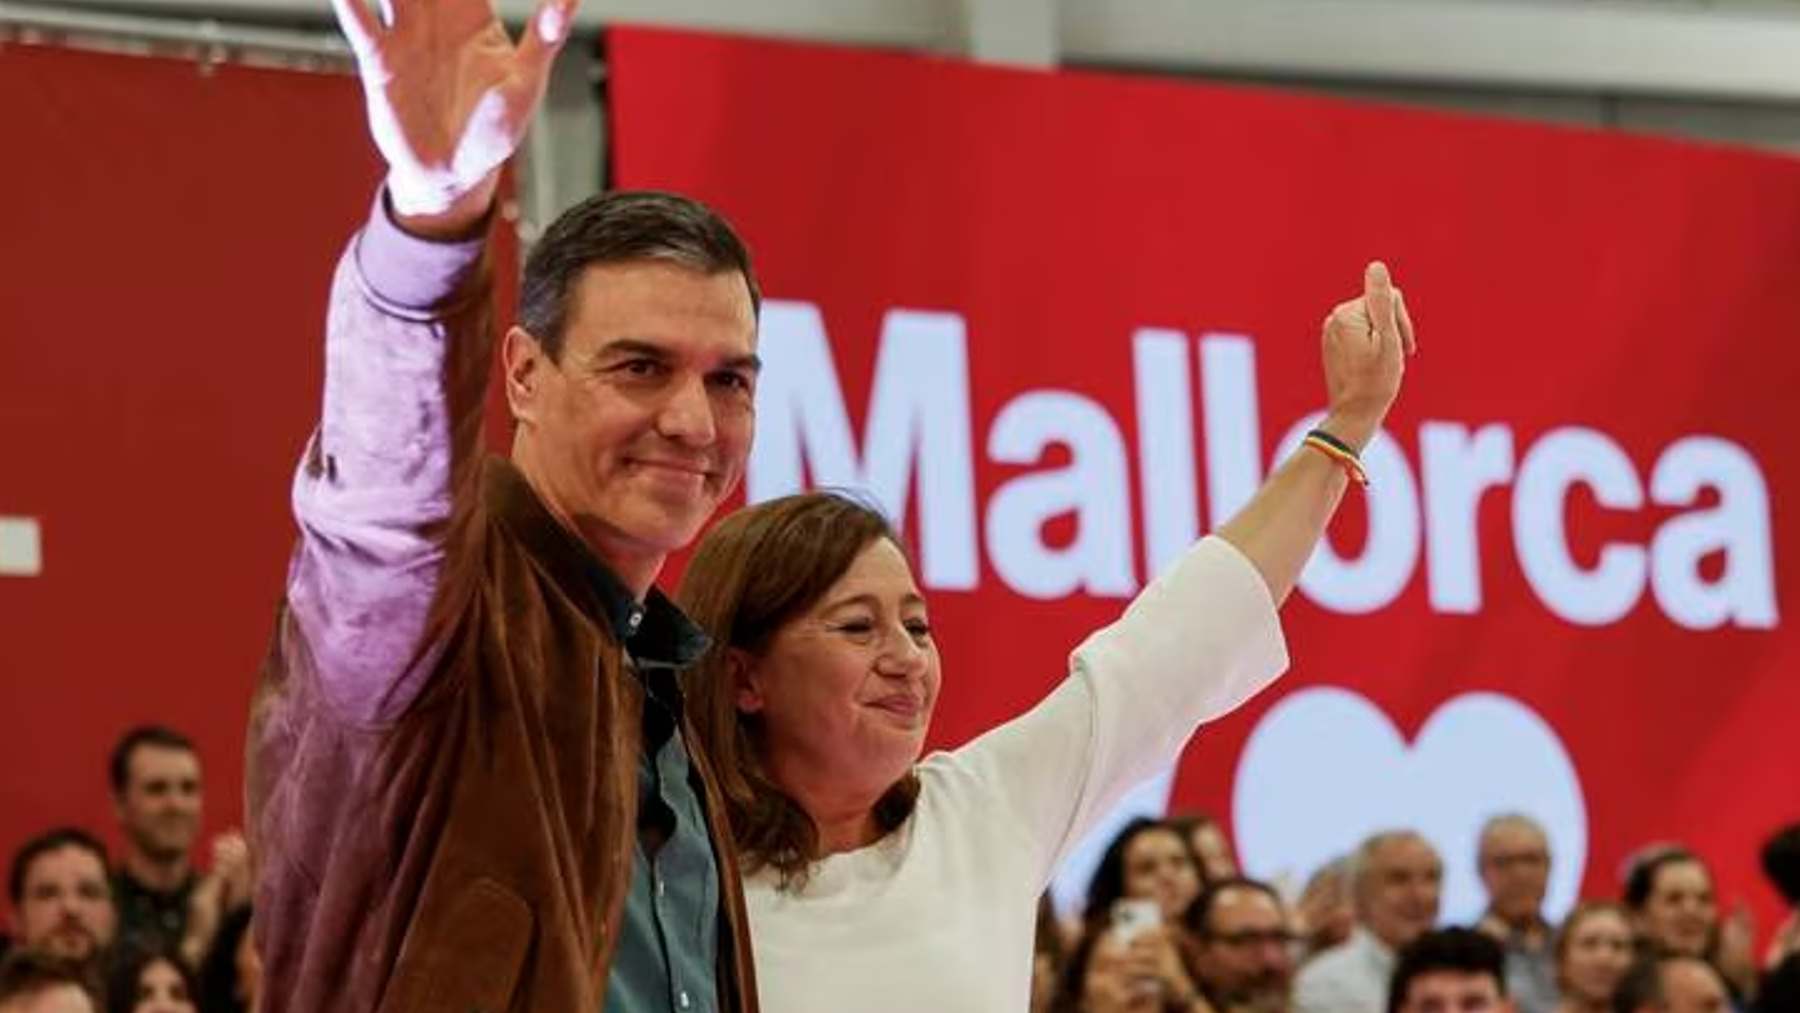 Pedro Sánchez y Francina Armengol en un acto electoral socialista en Palma. EFE. CATALINA CLADERA.